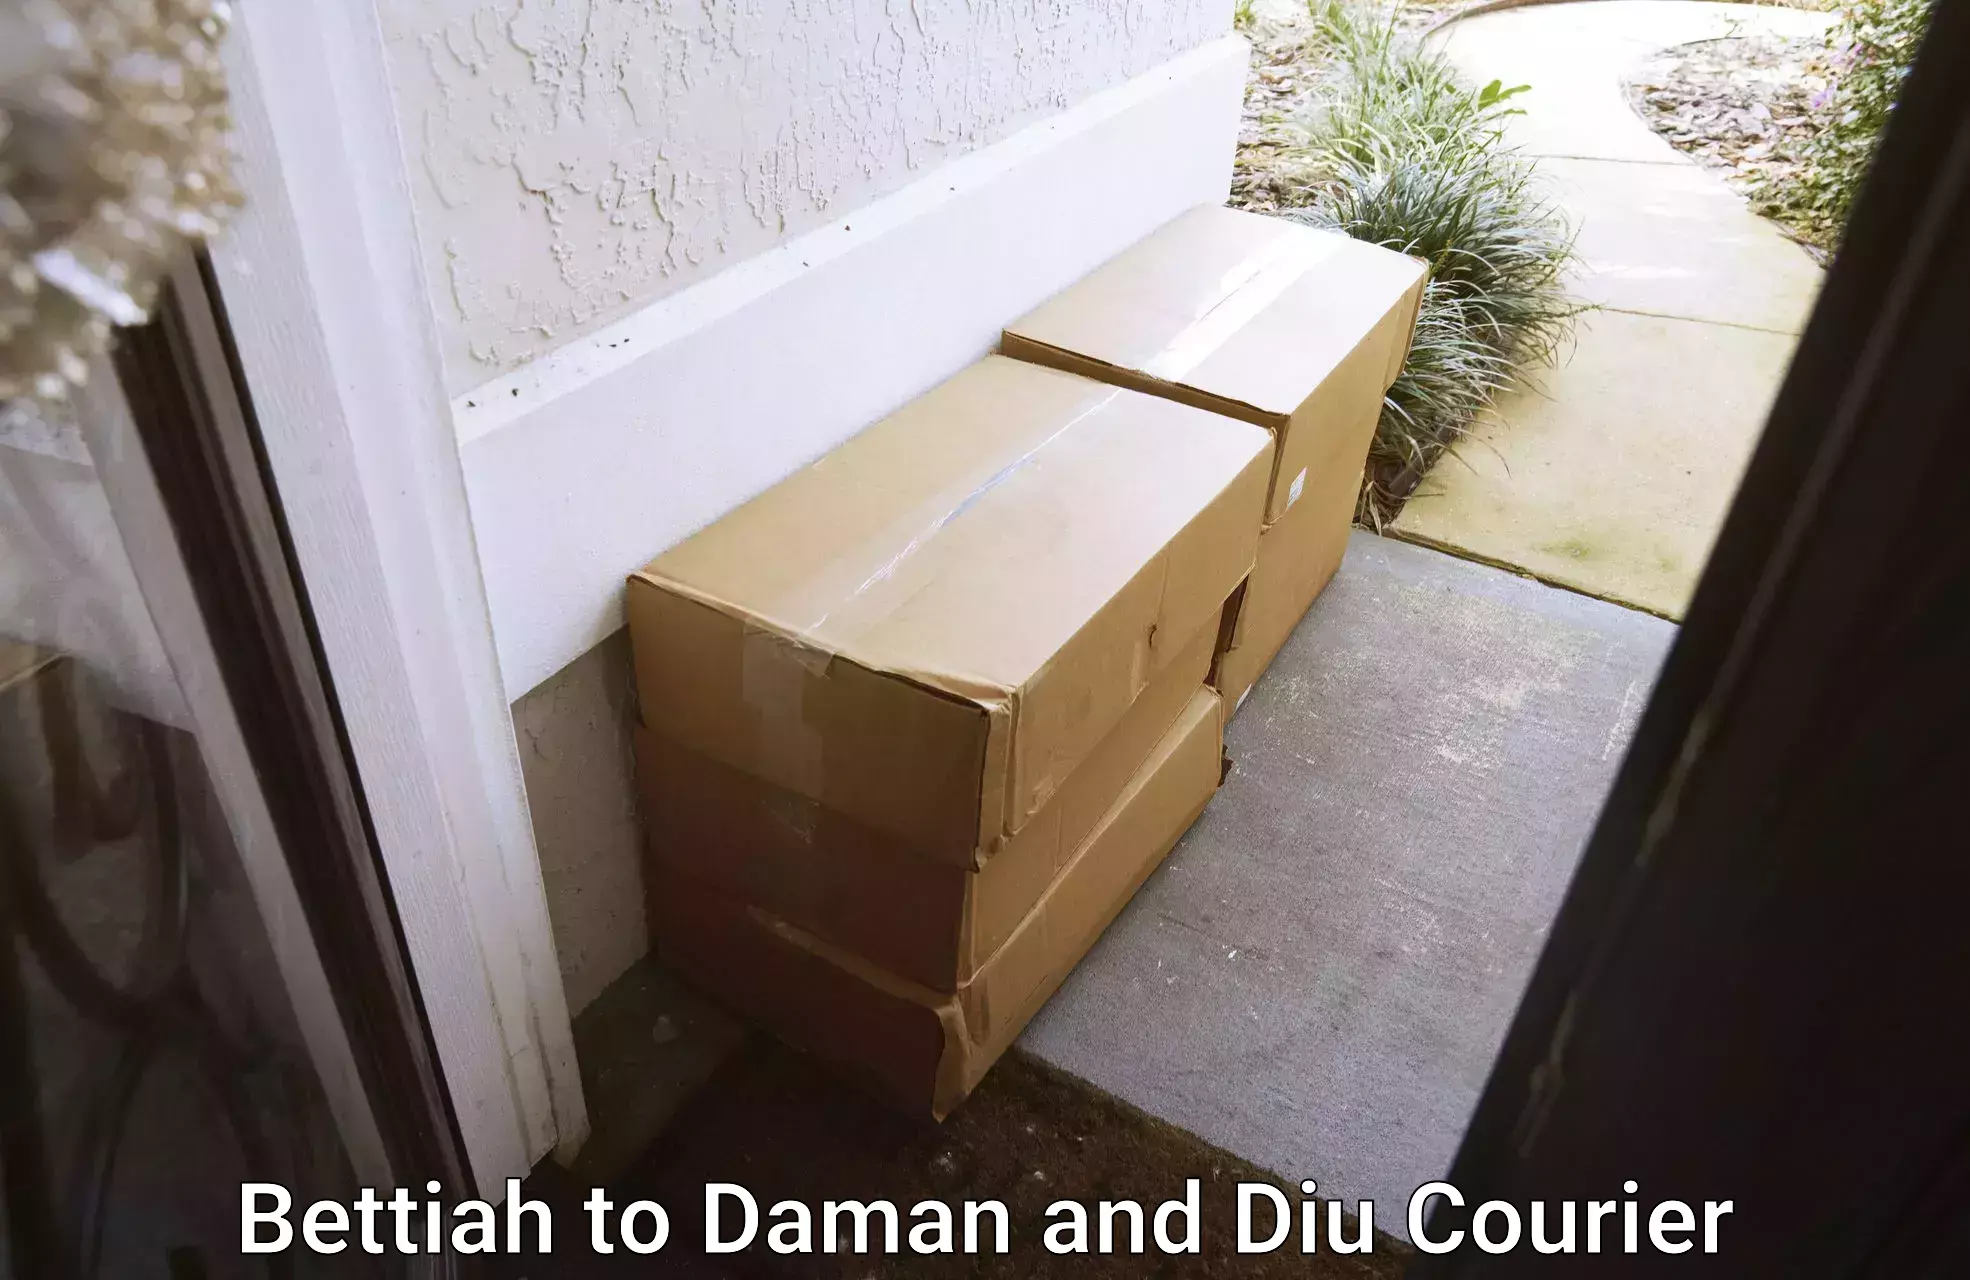 Expert household movers Bettiah to Diu